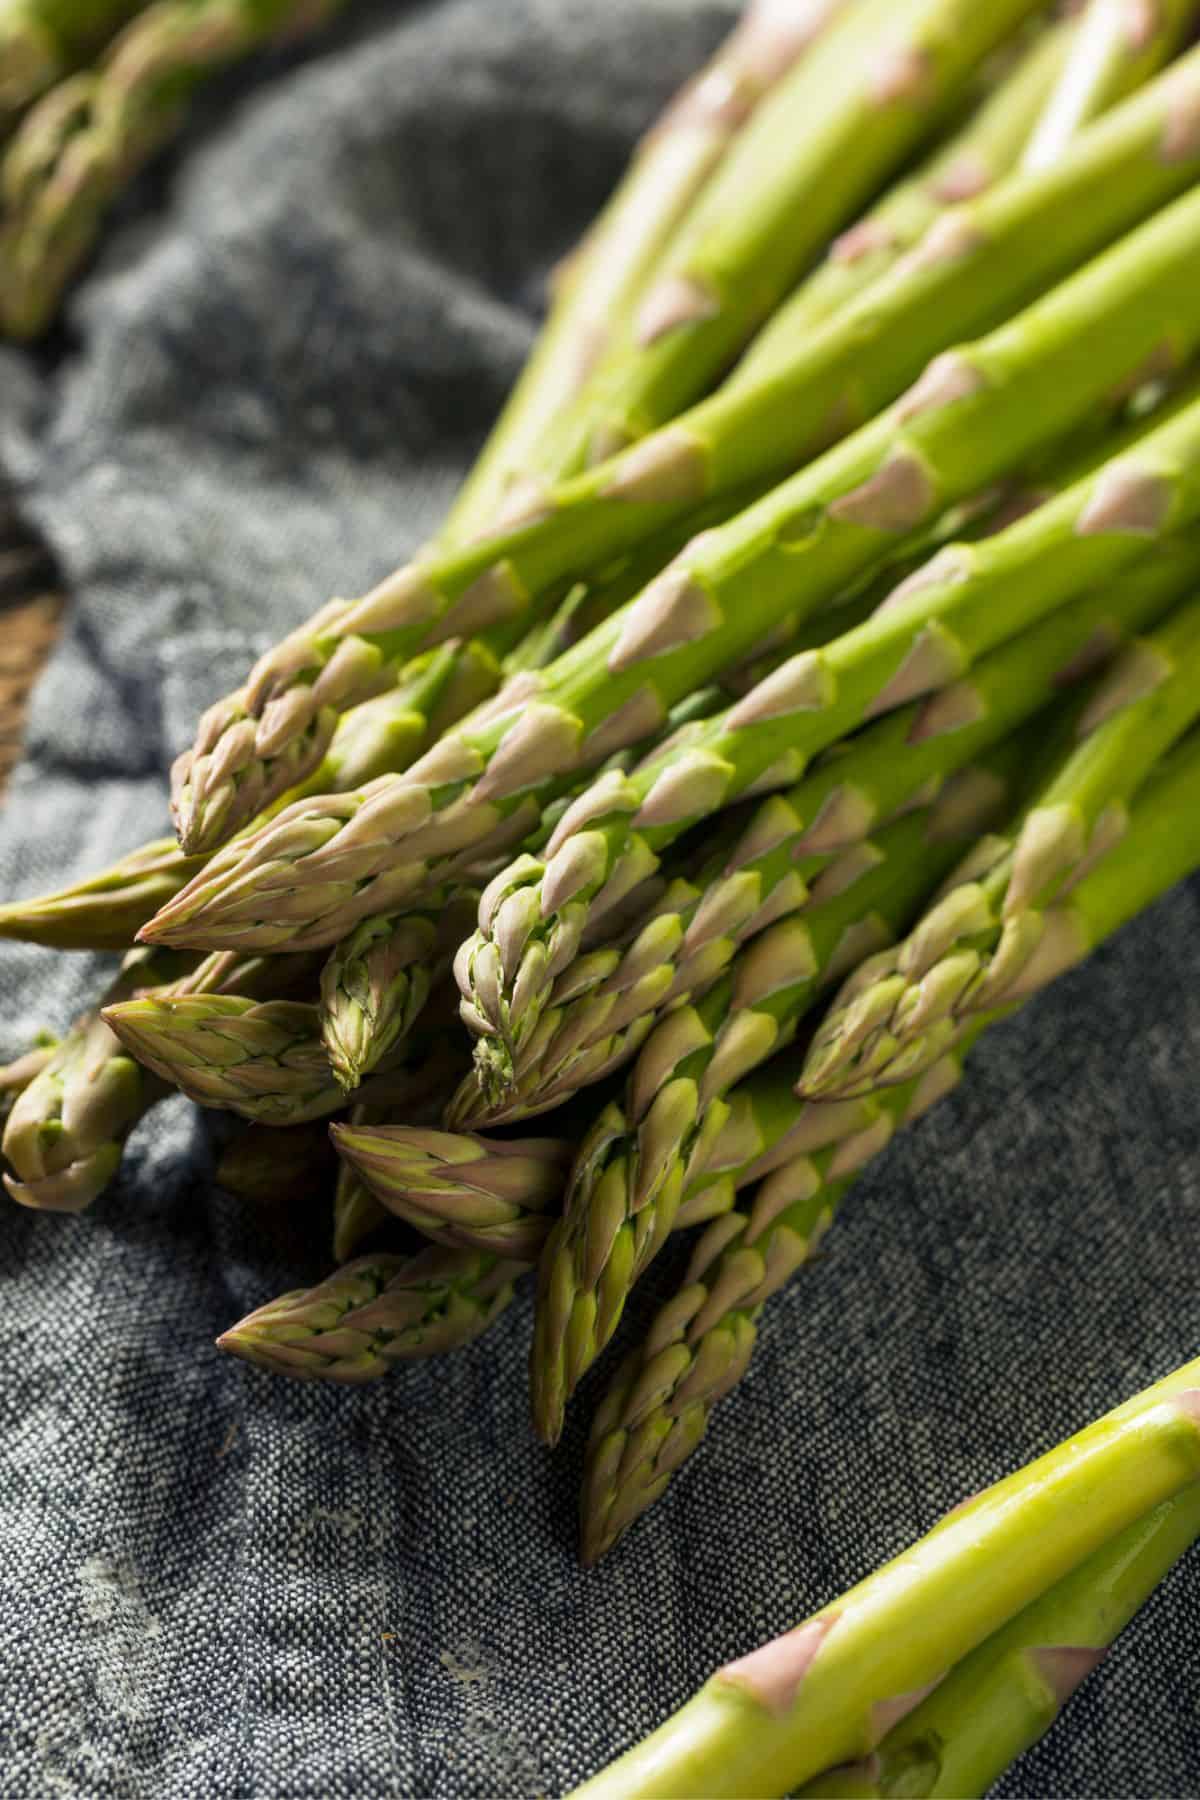 A bunch of fresh asparagus stalks ready for Asparagus Recipes on a dark fabric surface.